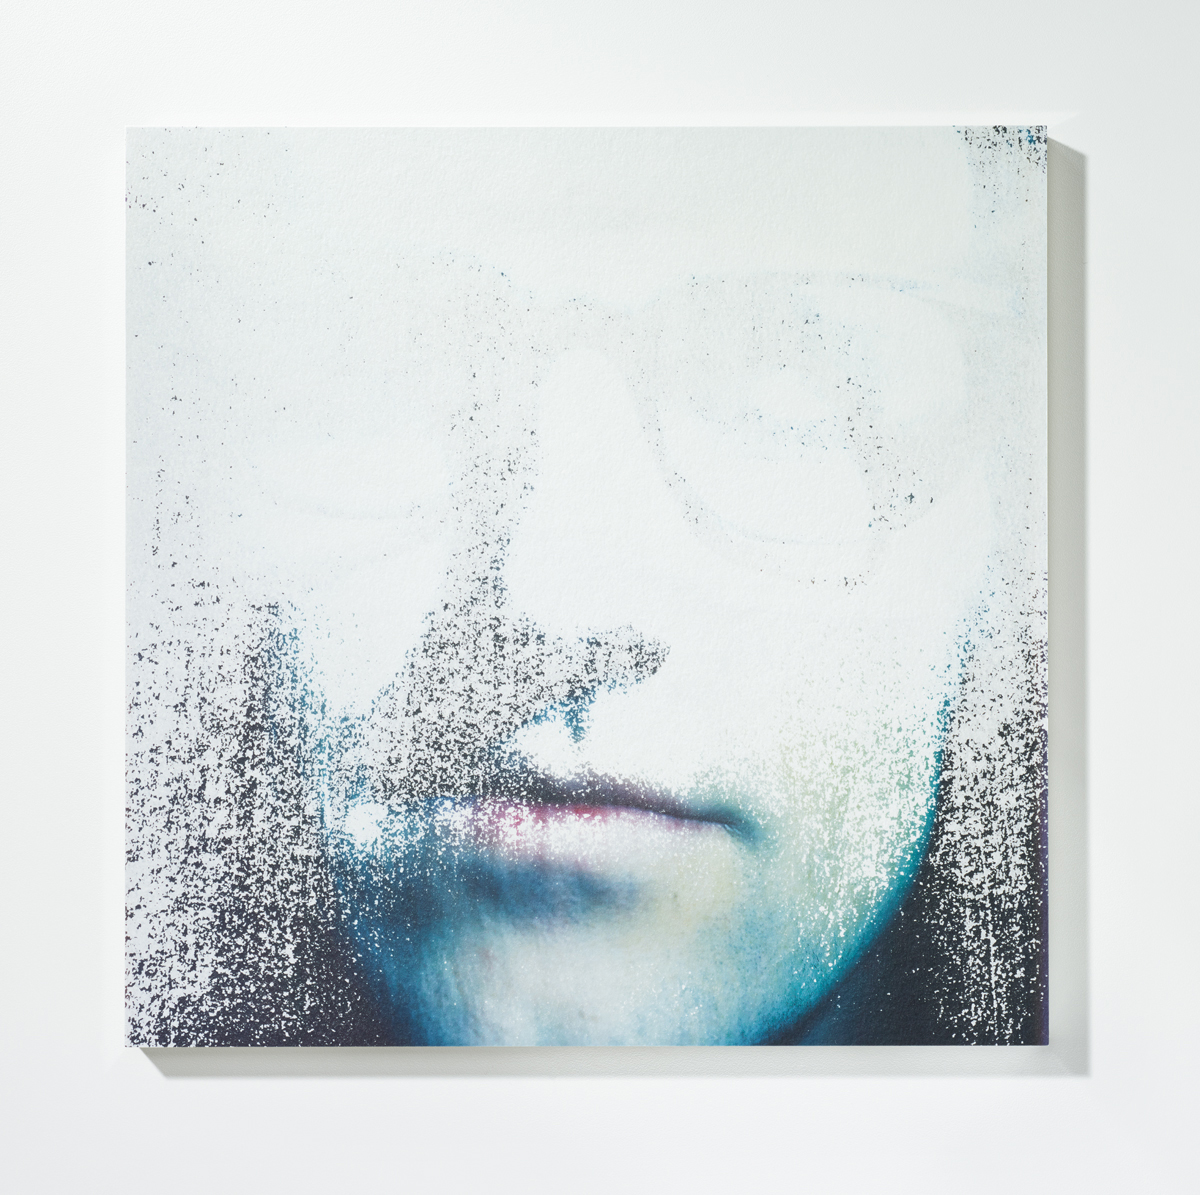 Löschung 1, 201630 x 30 cmPigmentprint, gelöscht, gefirnisst, kaschiert auf Acrylglas